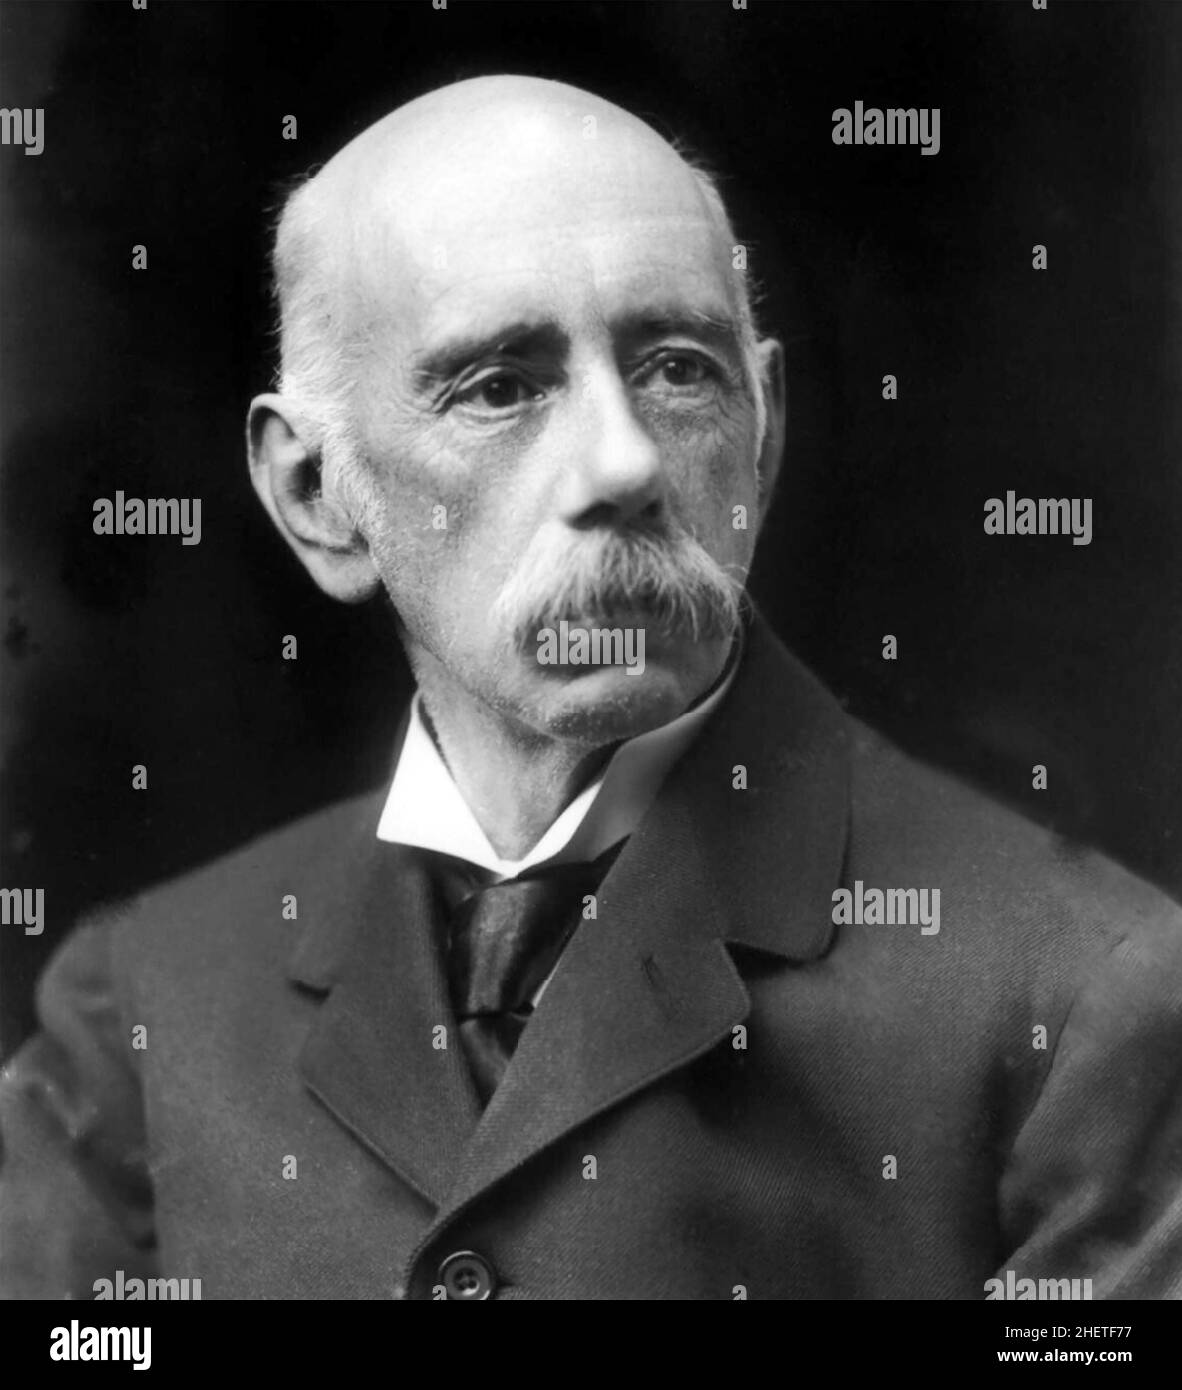 HENRY RIDLEY (1855-1956) englischer Botaniker und Geologe, der die Gummiproduktion in Malaya förderte Stockfoto